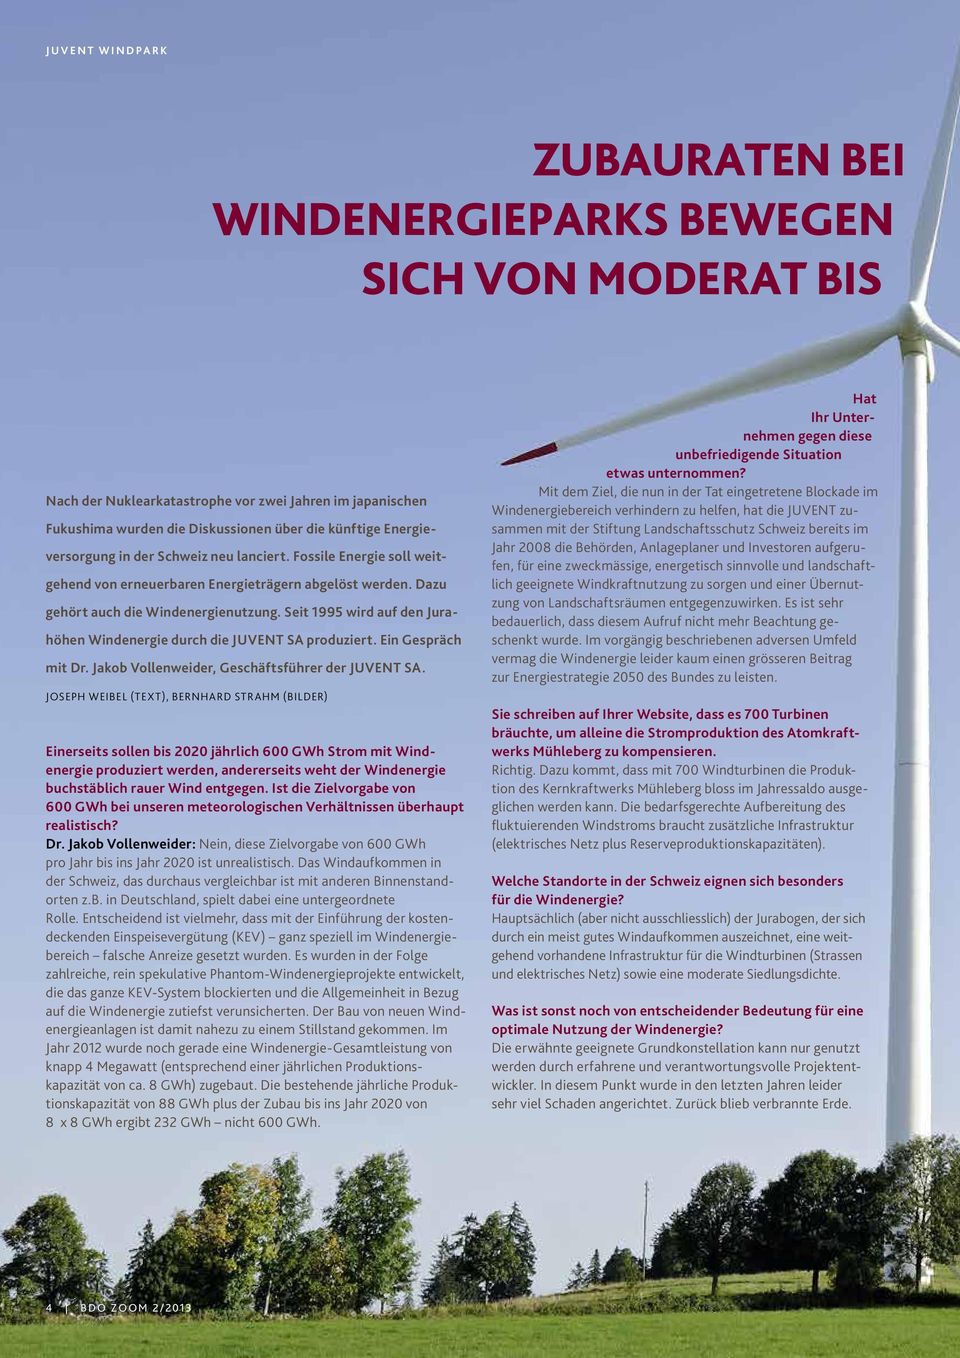 Seit 1995 wird auf den Jurahöhen Windenergie durch die JUVENT SA produziert. Ein Gespräch mit Dr. Jakob Vollenweider, Geschäftsführer der JUVENT SA.